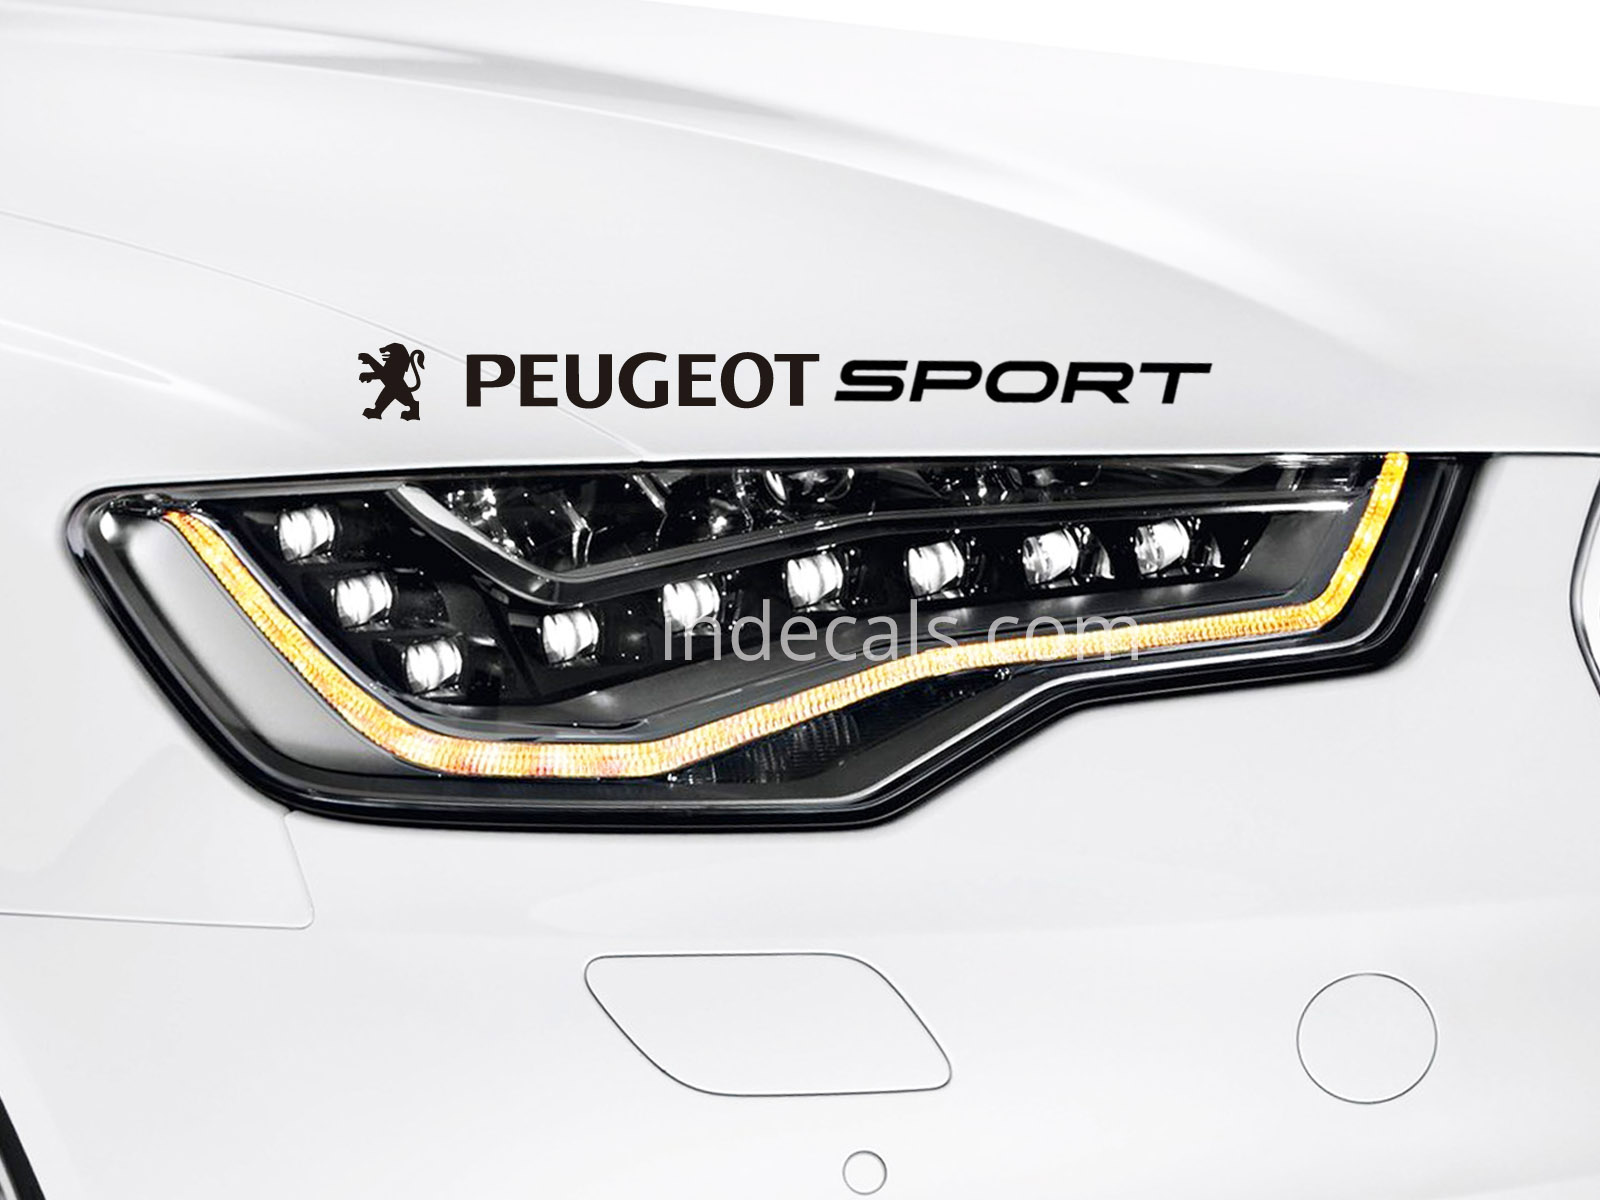 1 x Peugeot Sport Sticker - Black